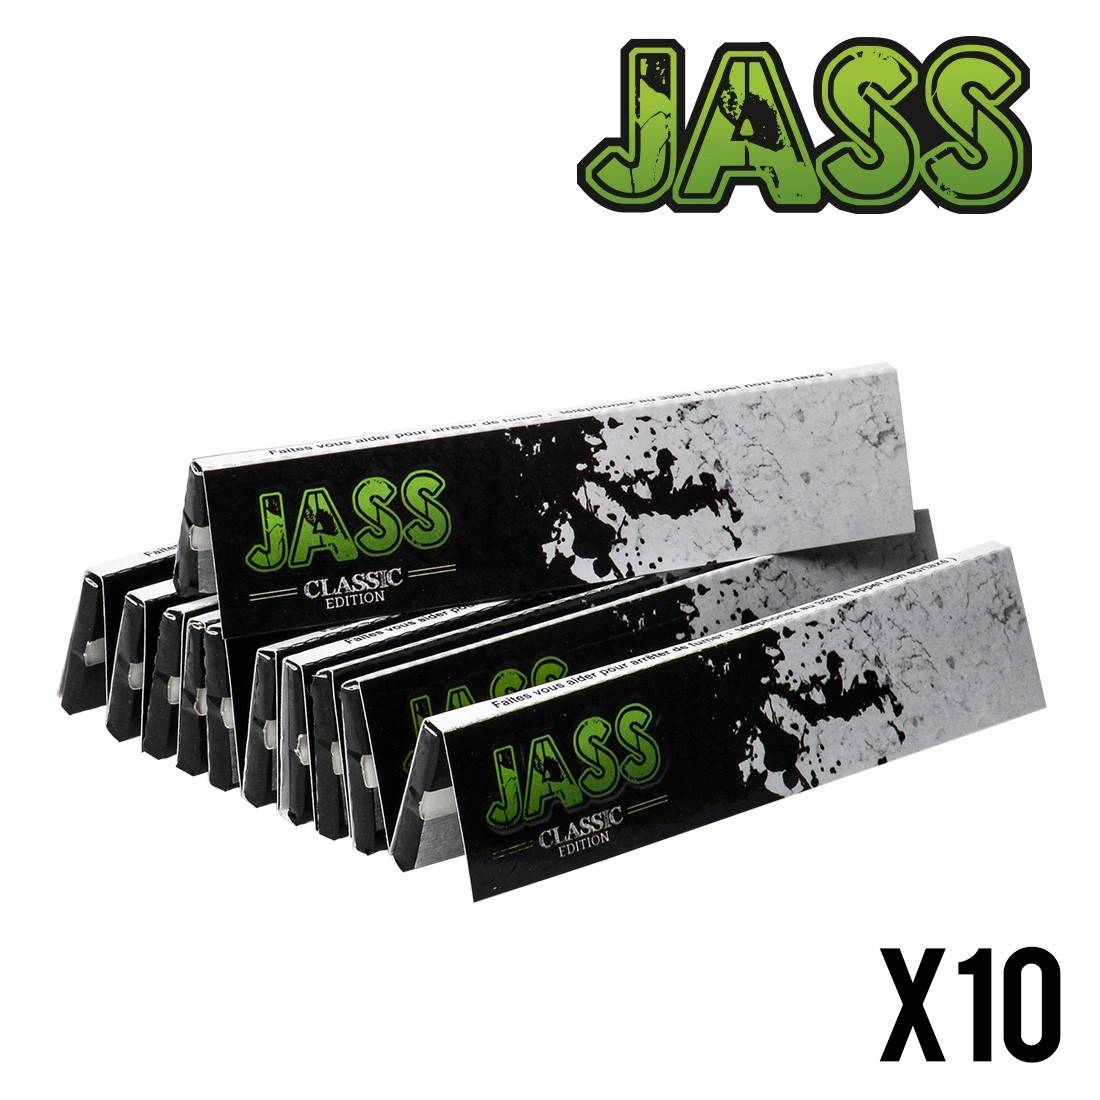 JASS Slim "classic edition" boite de 50 carnets de feuilles à rouler longue 